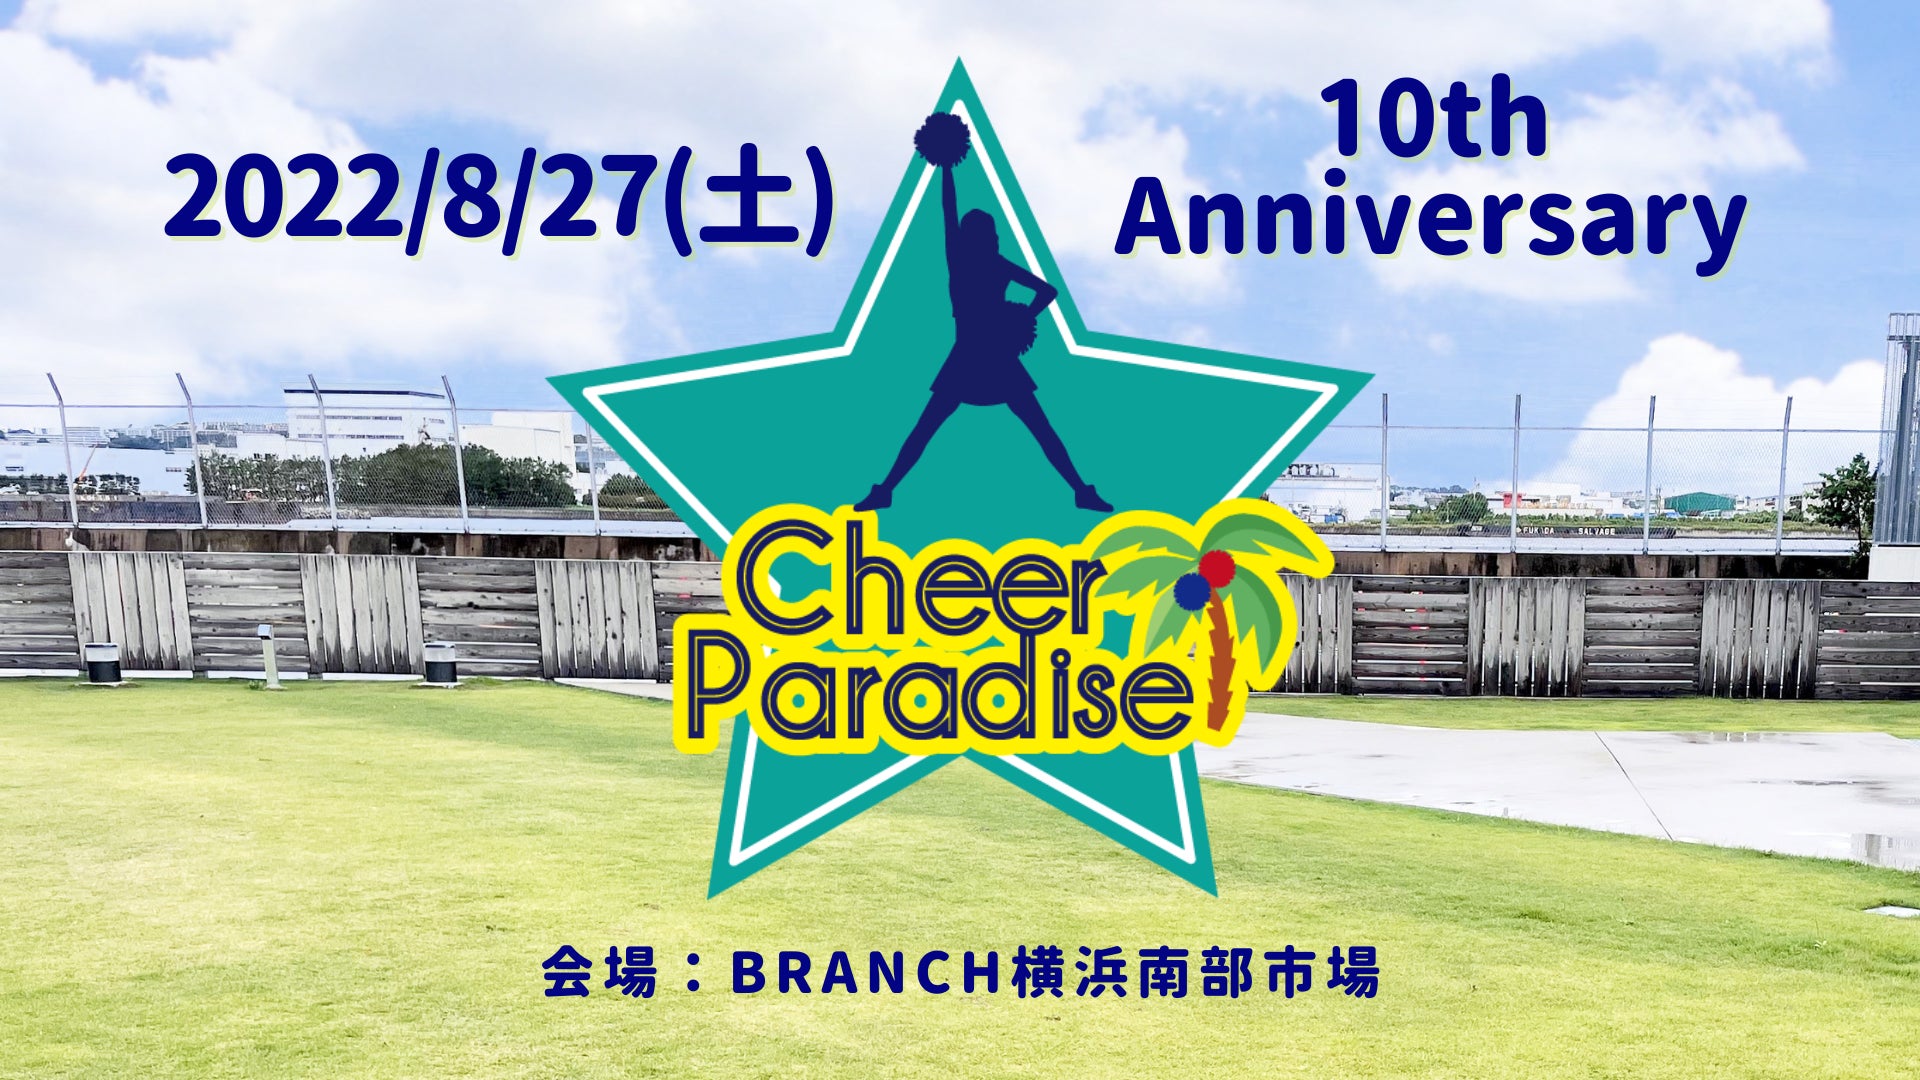 チアイベント「Cheer Paradise BRANCH横浜南部市場」、『横浜市 市民局』の後援が決定